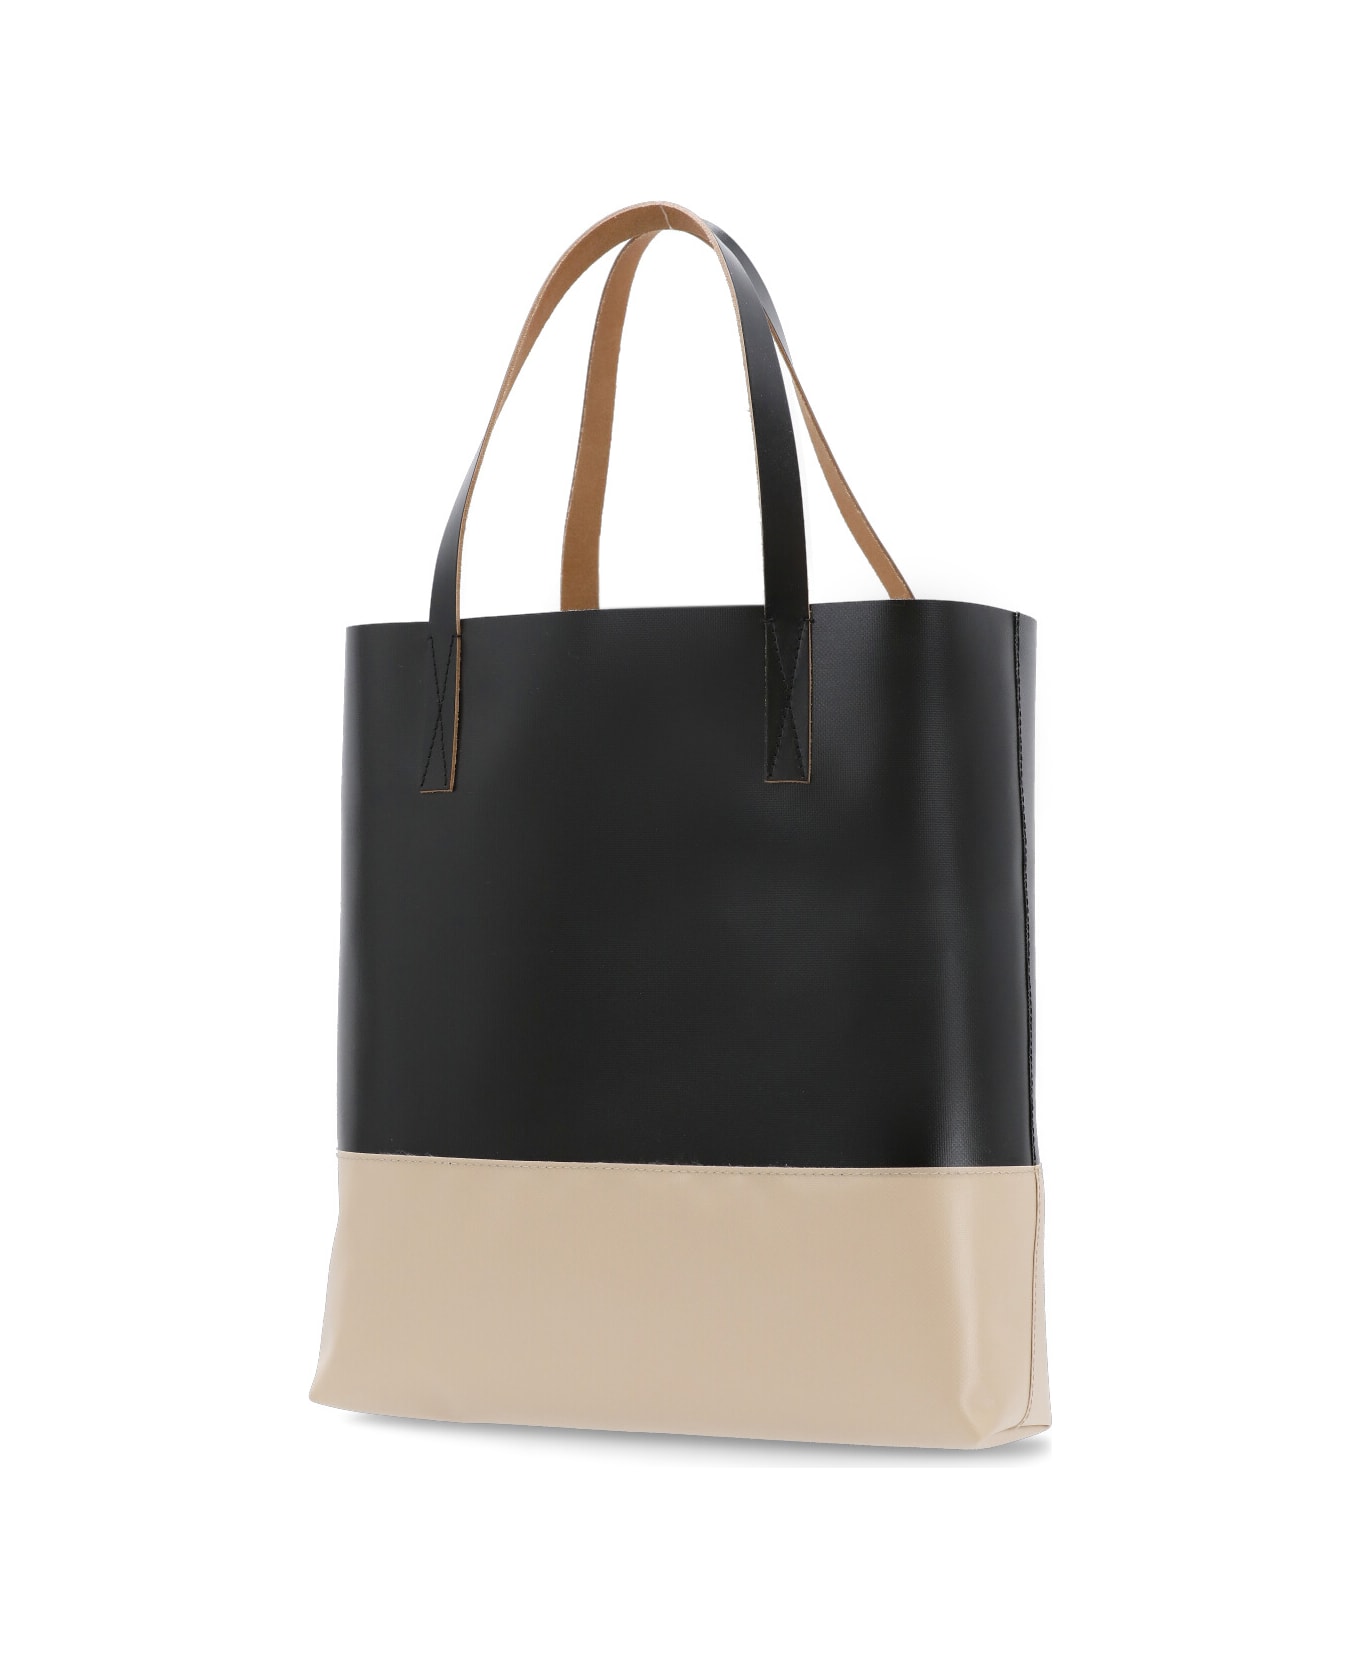 Marni North South Shopper Bag - MultiColour